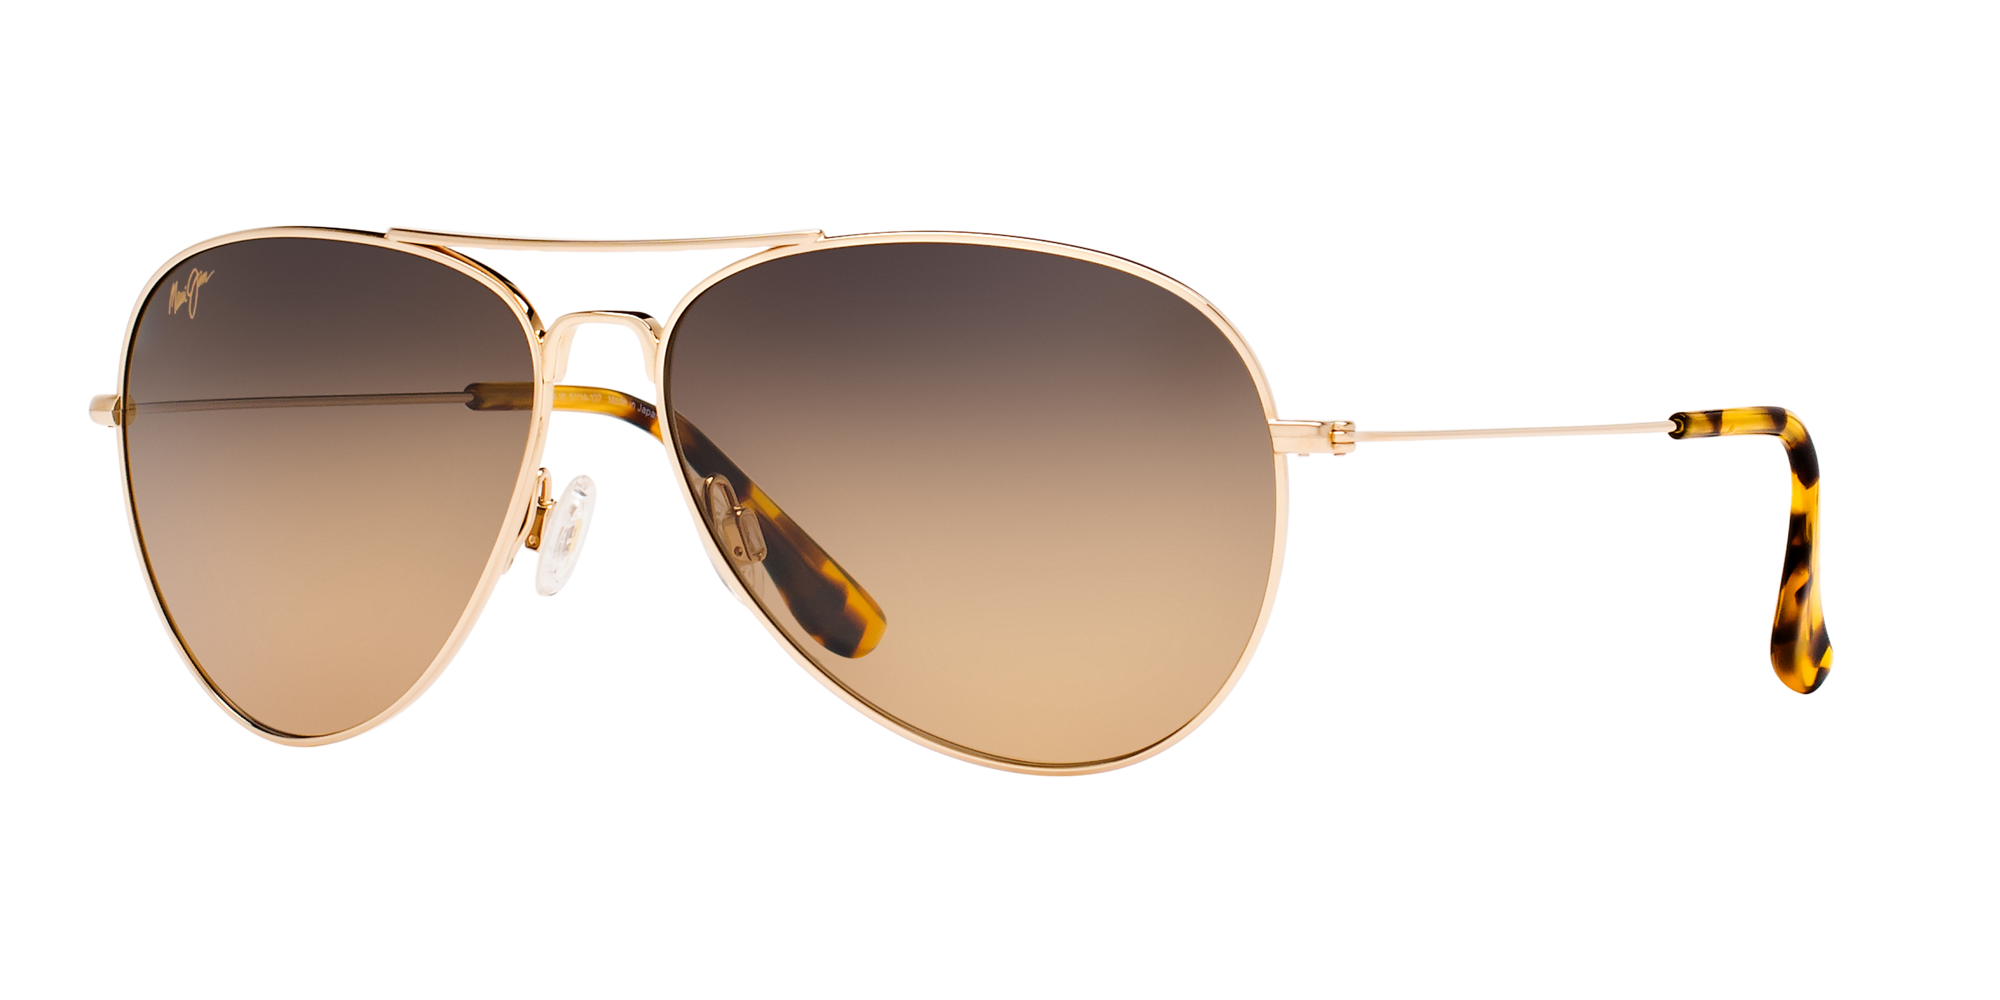 Celebrity fashion Aviator Sunglasses Rimless frame 2 toned lens. 